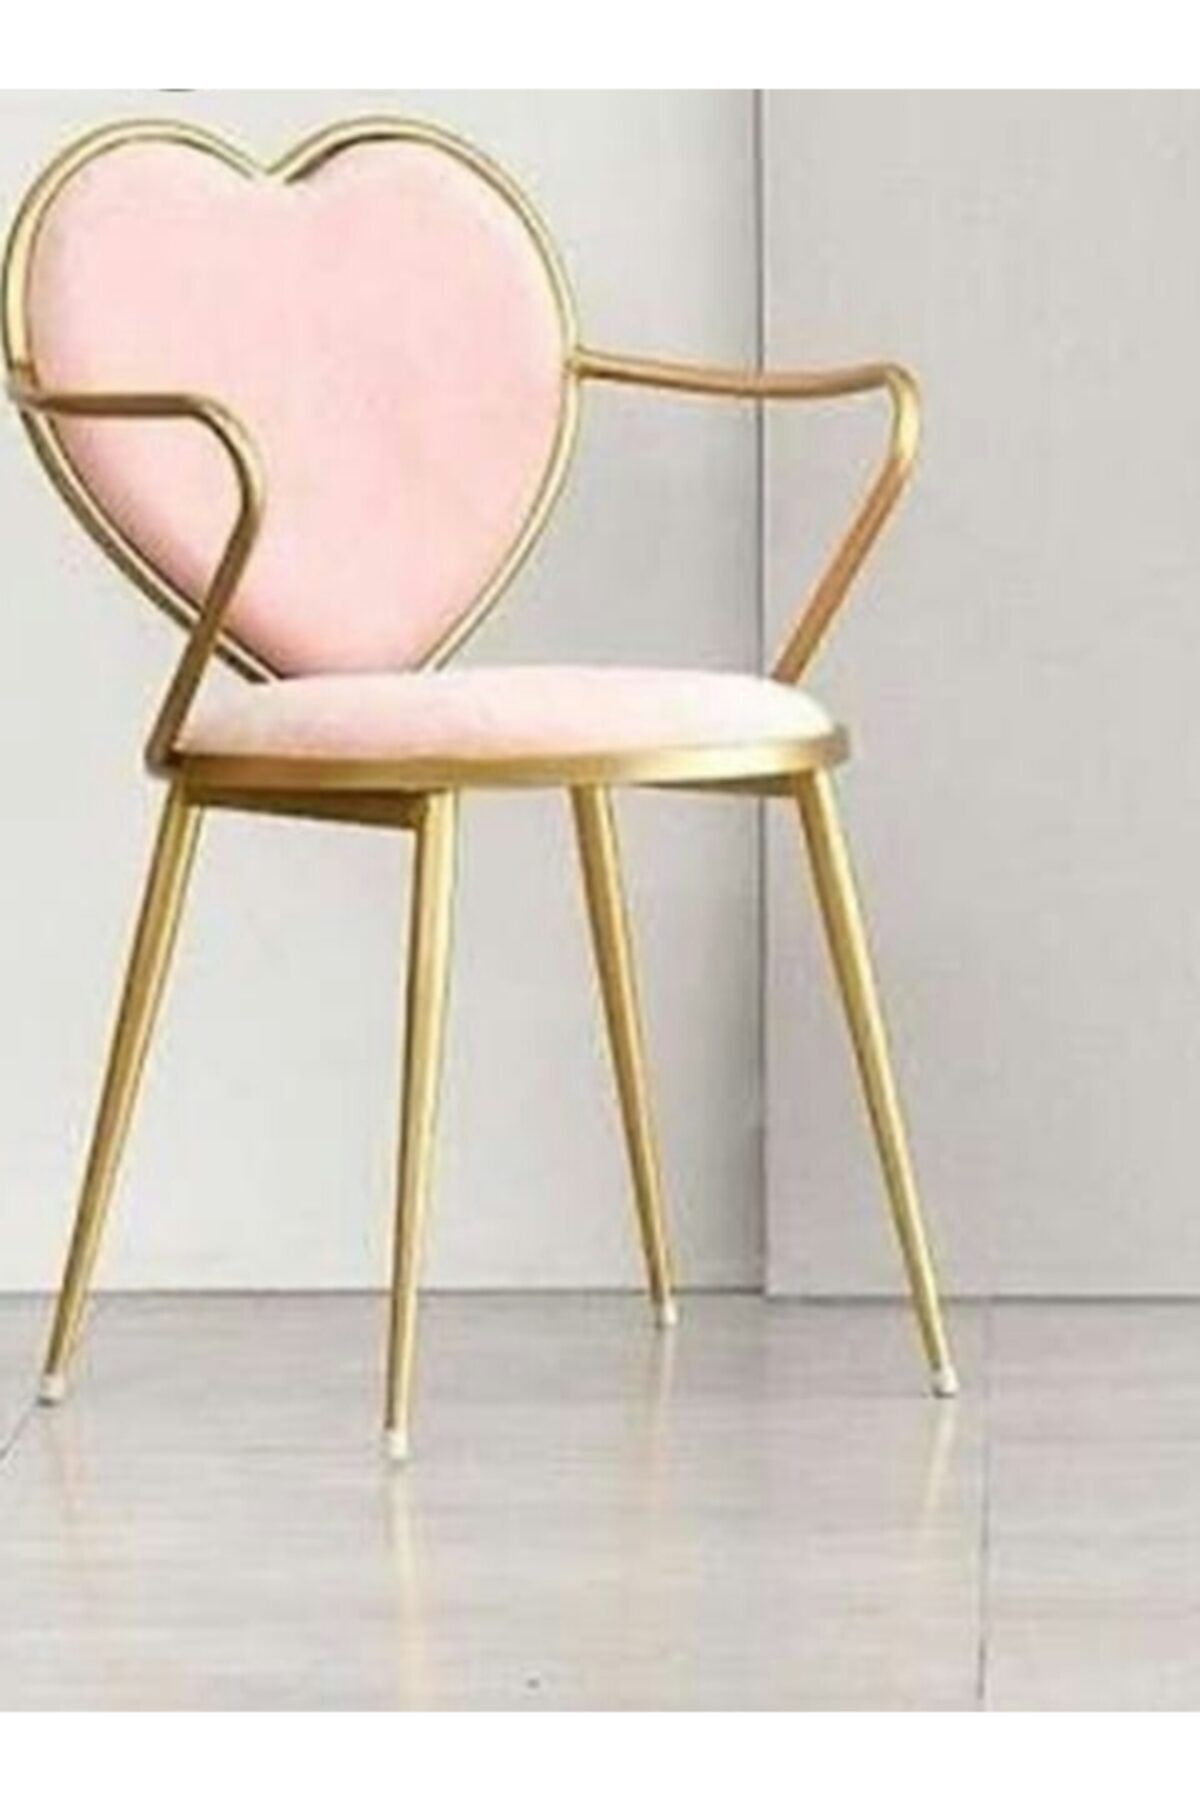 J&S QUALİTY Orjinal Tasarım Kalpli Parlak Gold Sandalye  Yatak Odası Yemek Masası Çeyiz Makyaj Sandalyesi,